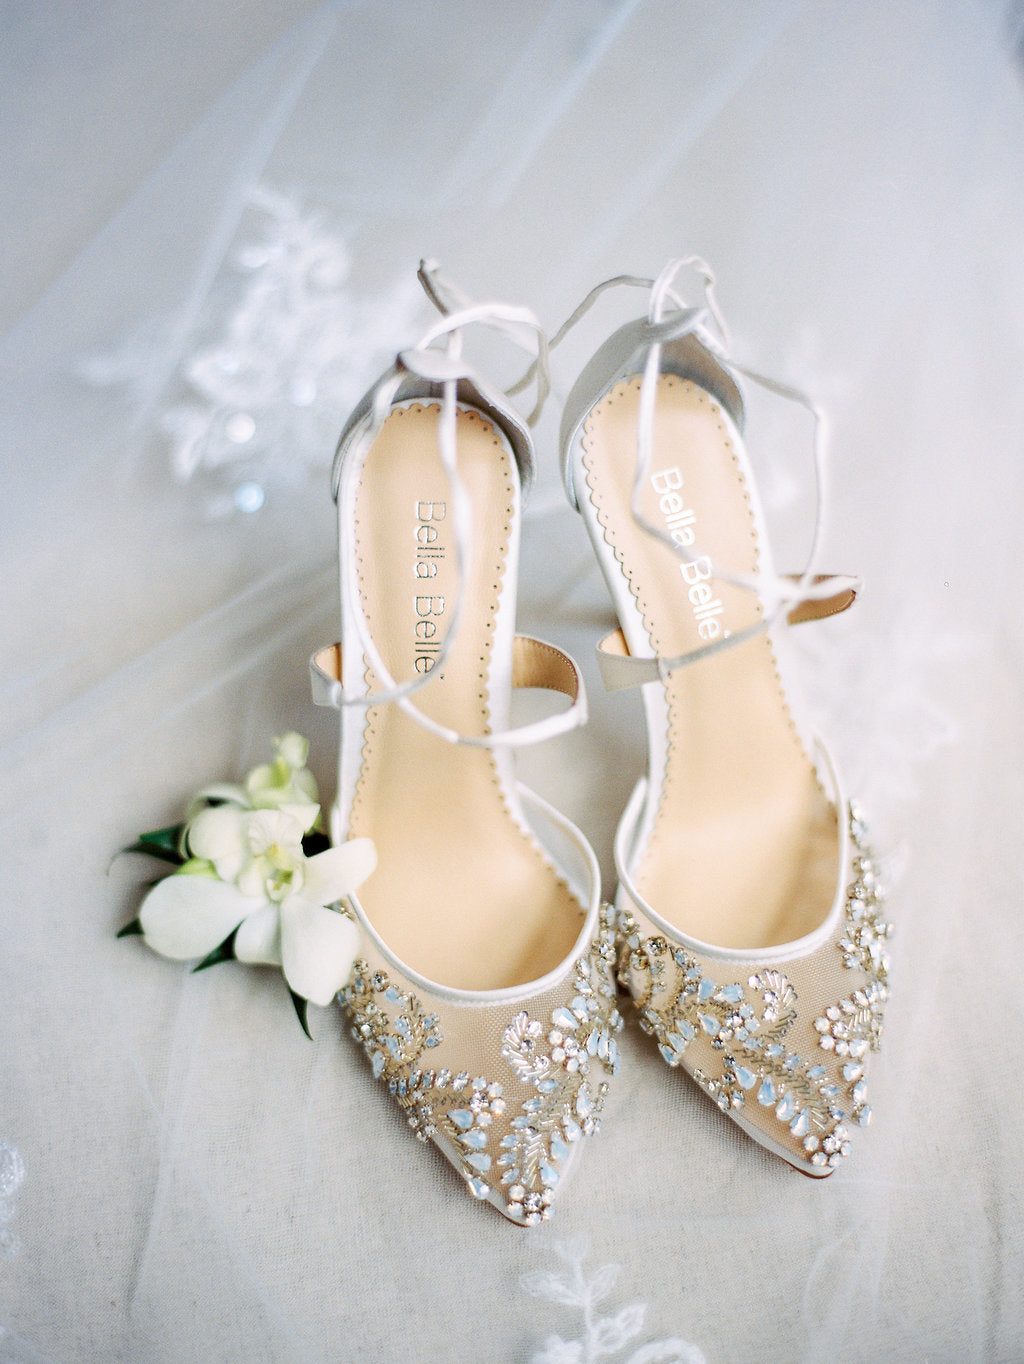 2 inch wedding sandals